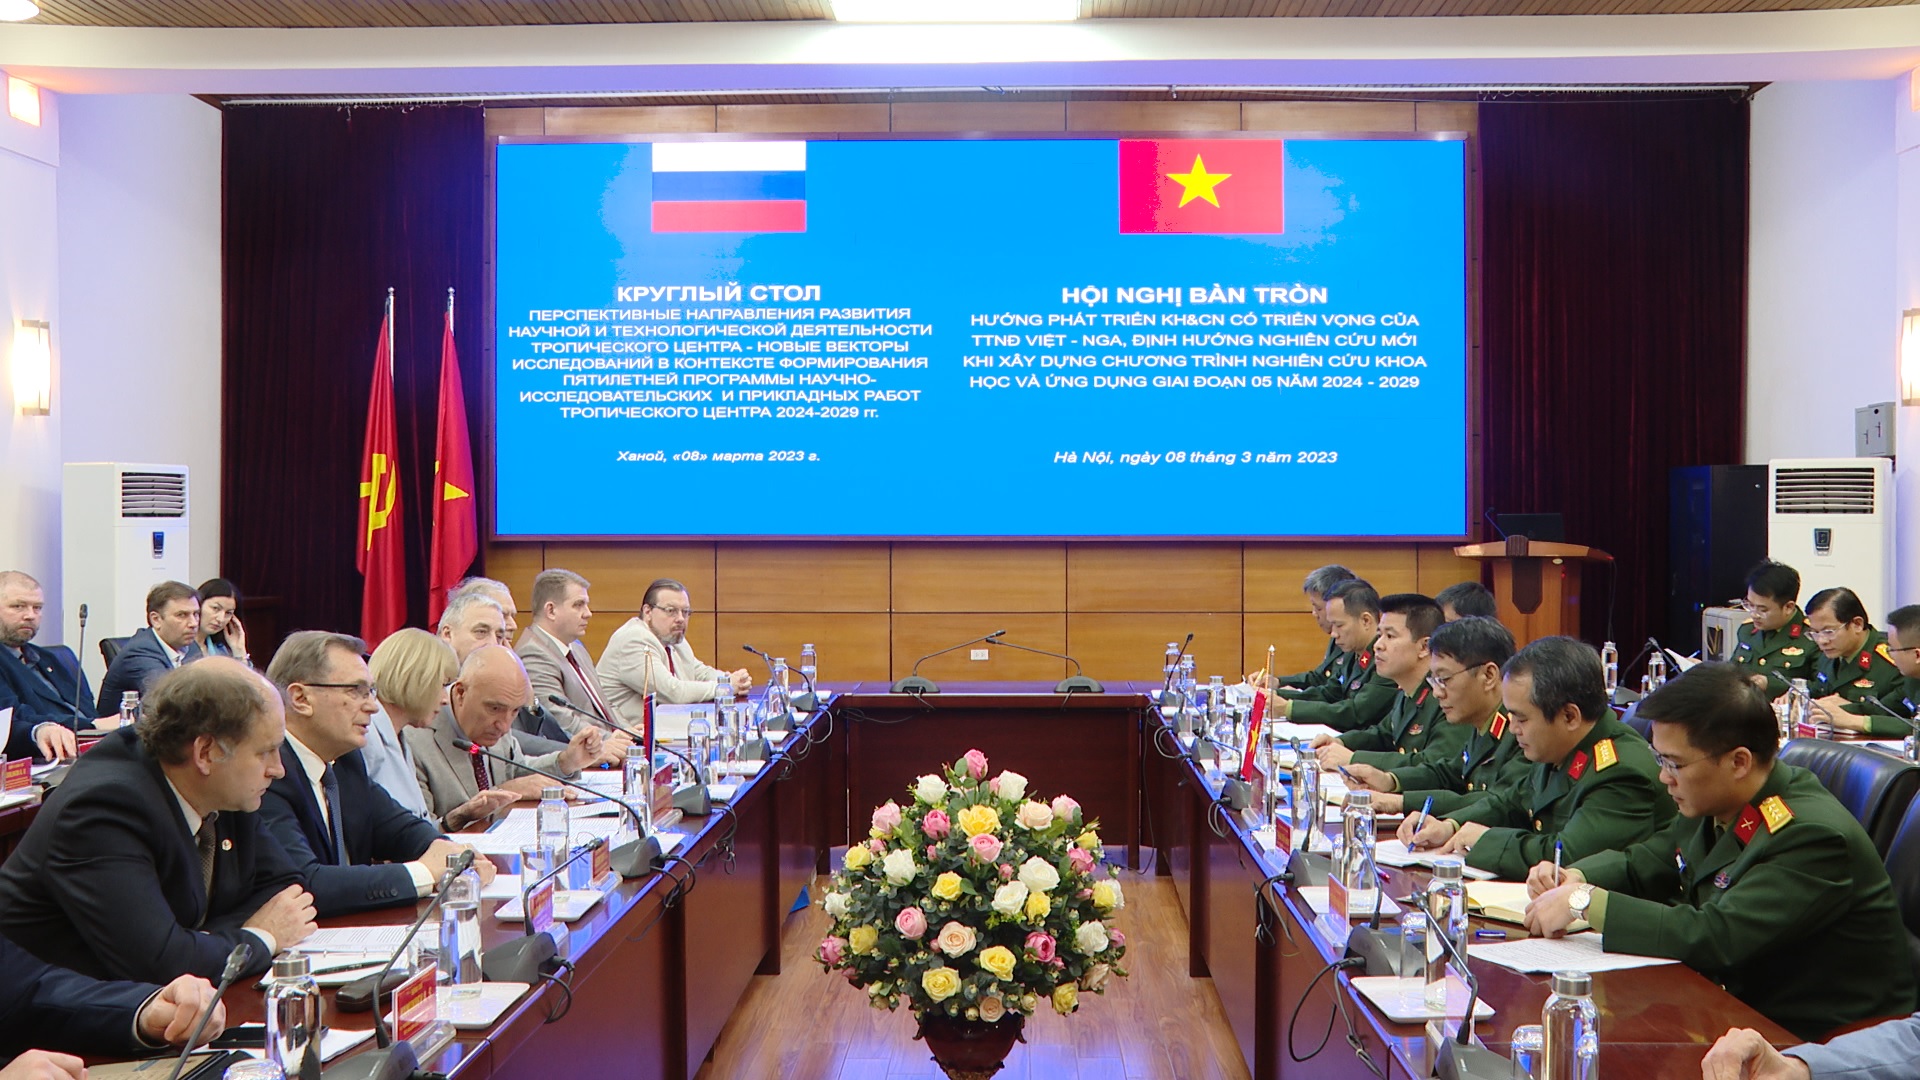 Hội nghị bàn tròn với Phân ban Nga trong Uỷ ban phối hợp liên chính phủ về Trung tâm Nhiệt đới Việt - Nga